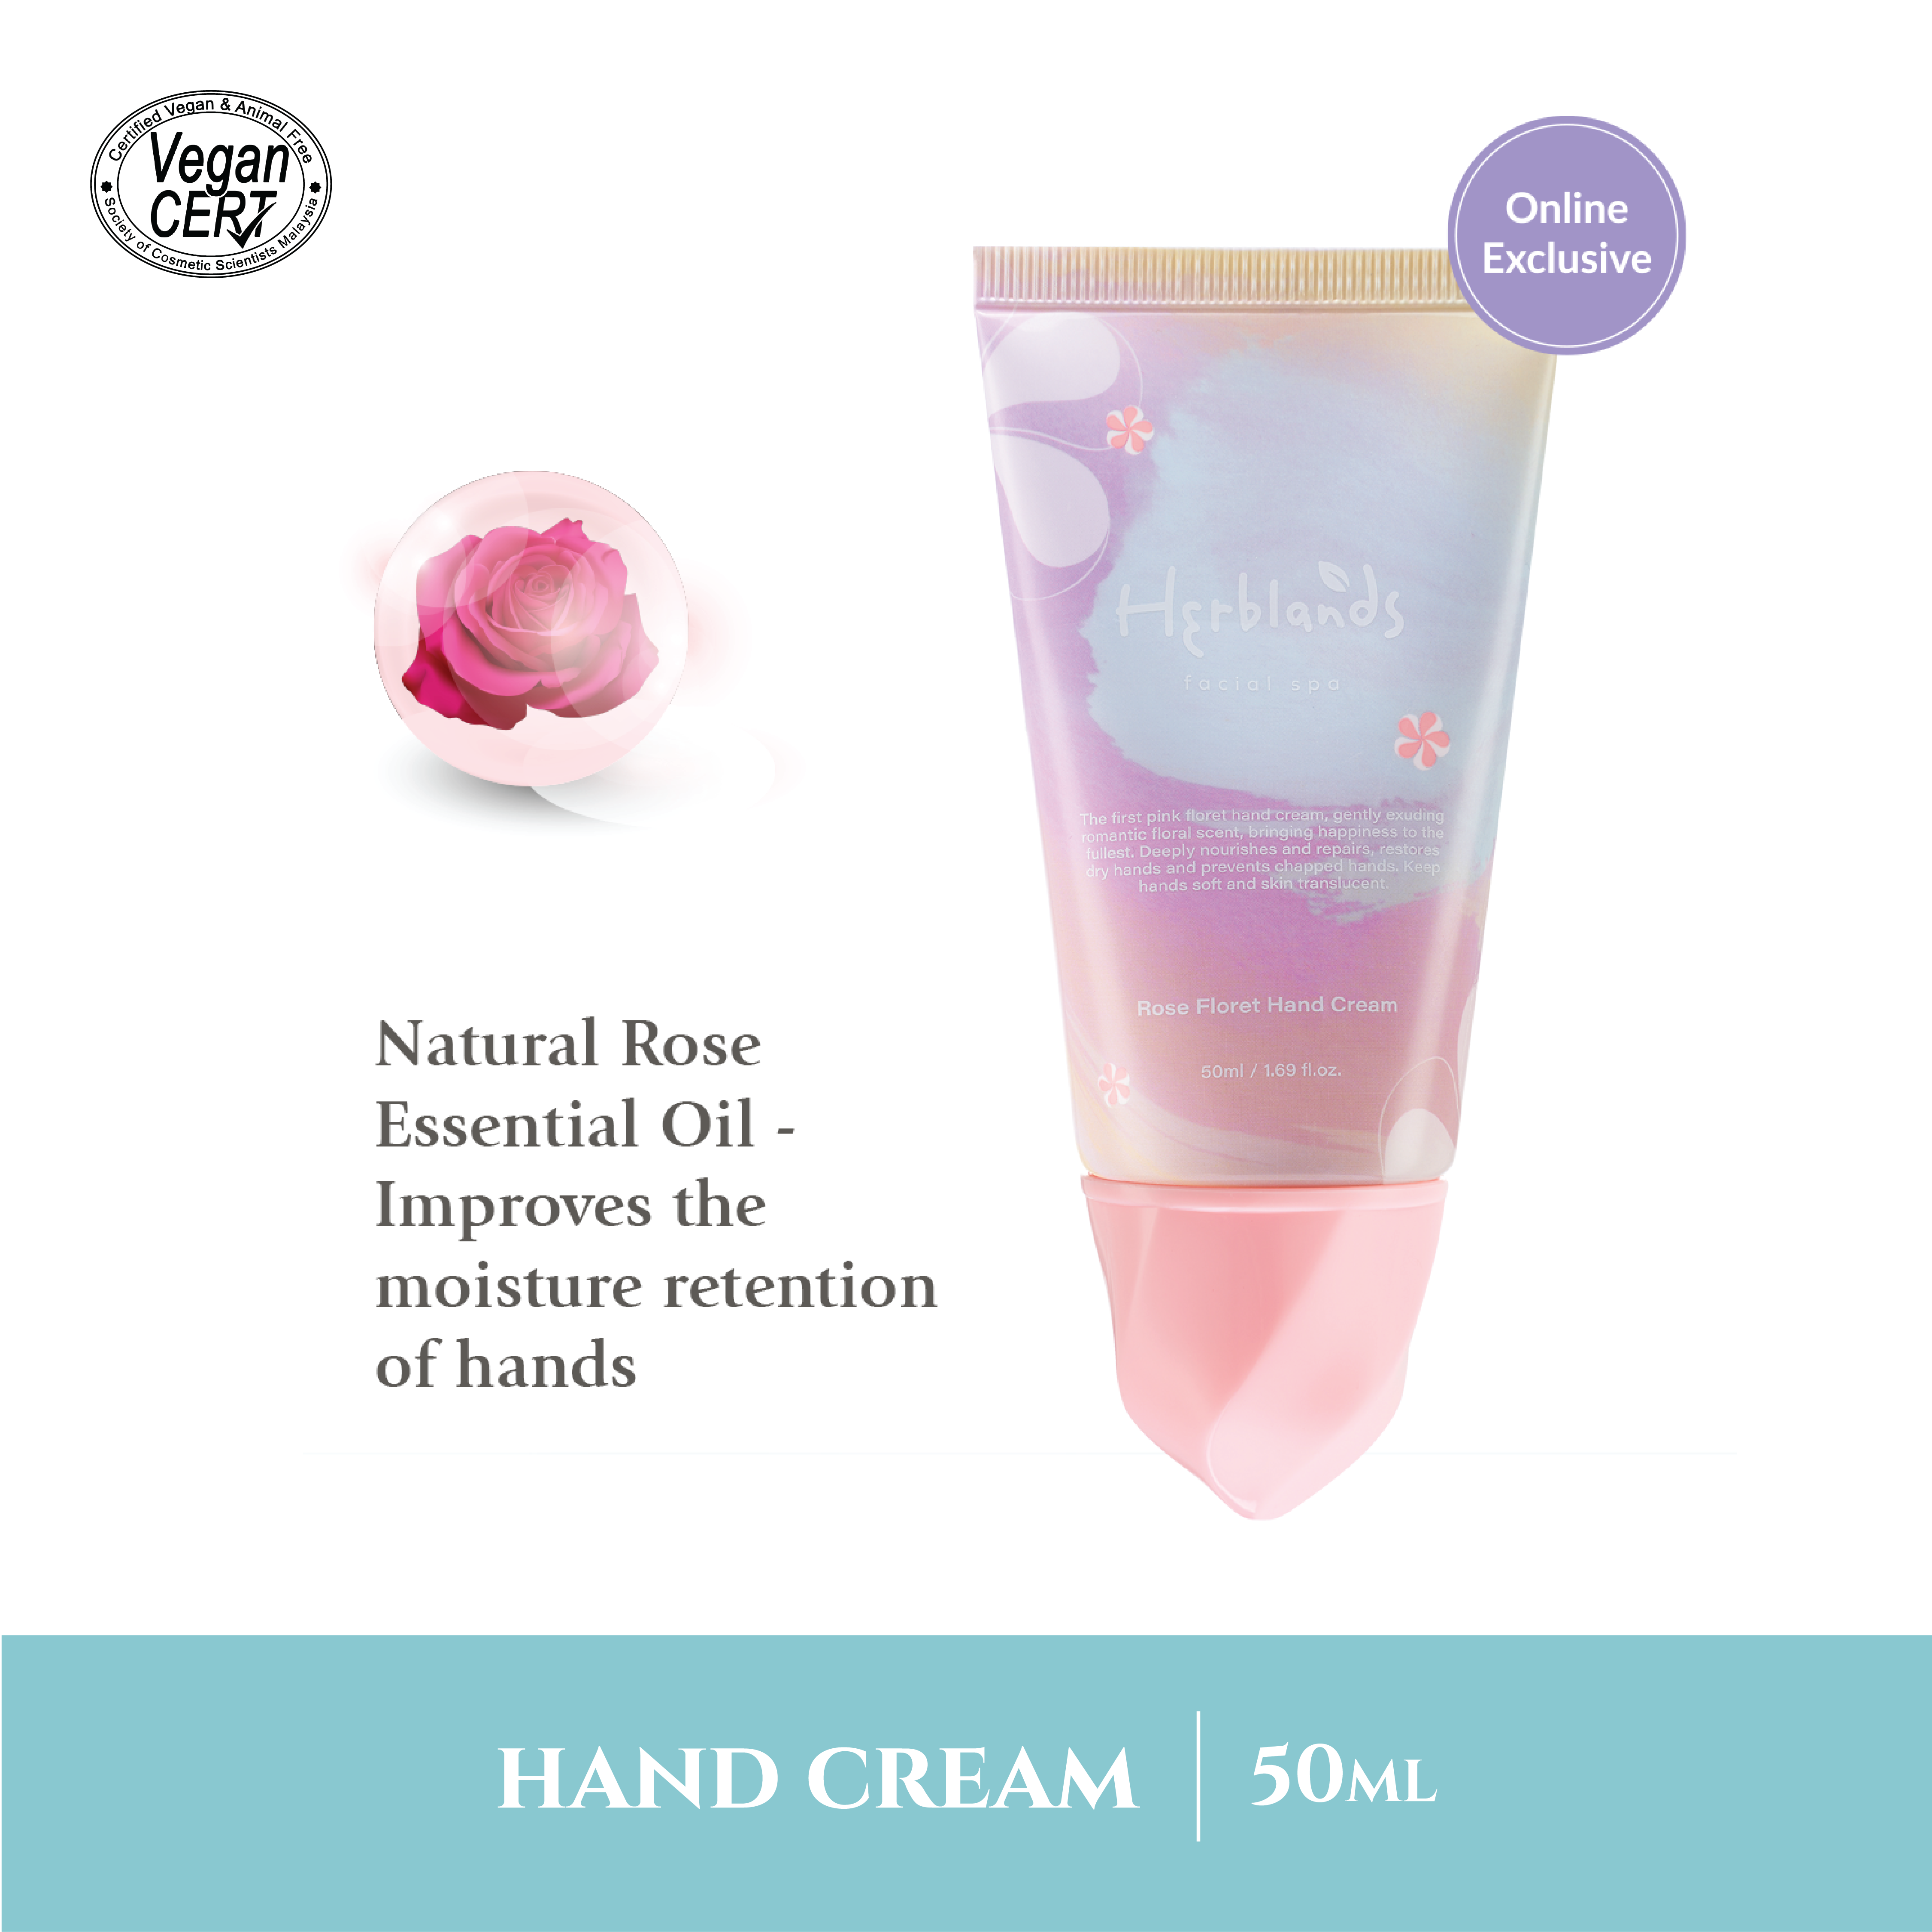 Rose Floret Hand Cream